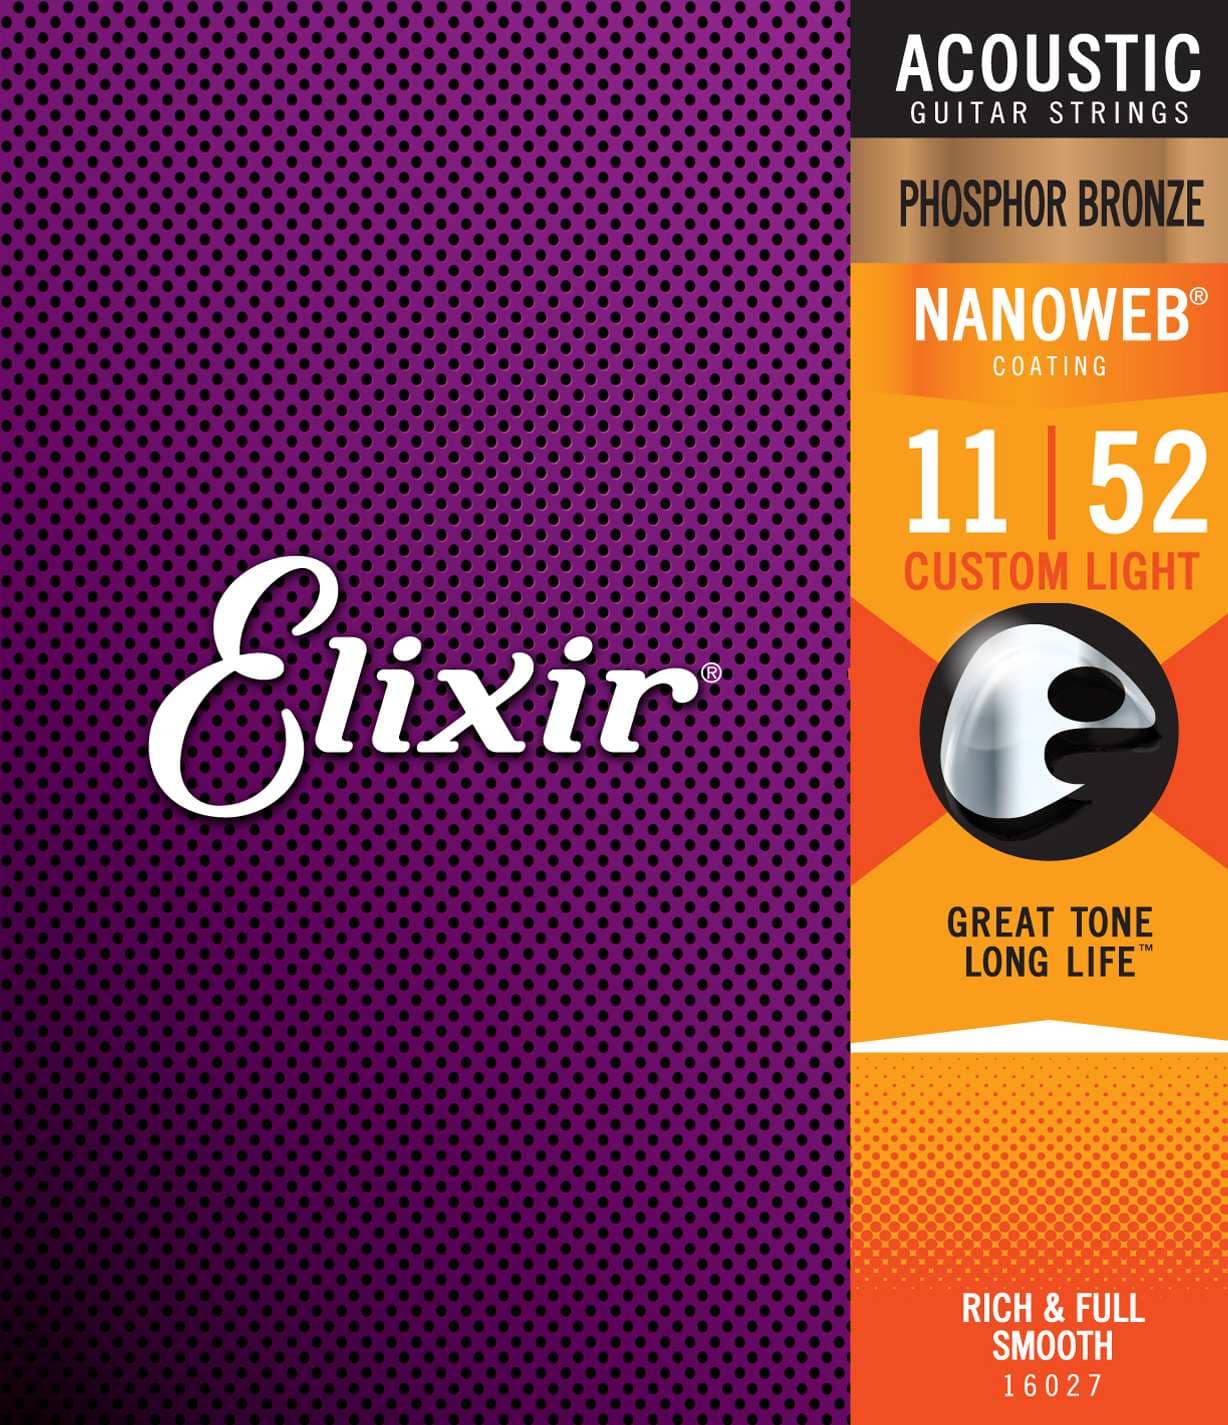 Elixir 16027 Custom Light 011-052 Nanoweb Phosphor Bronze